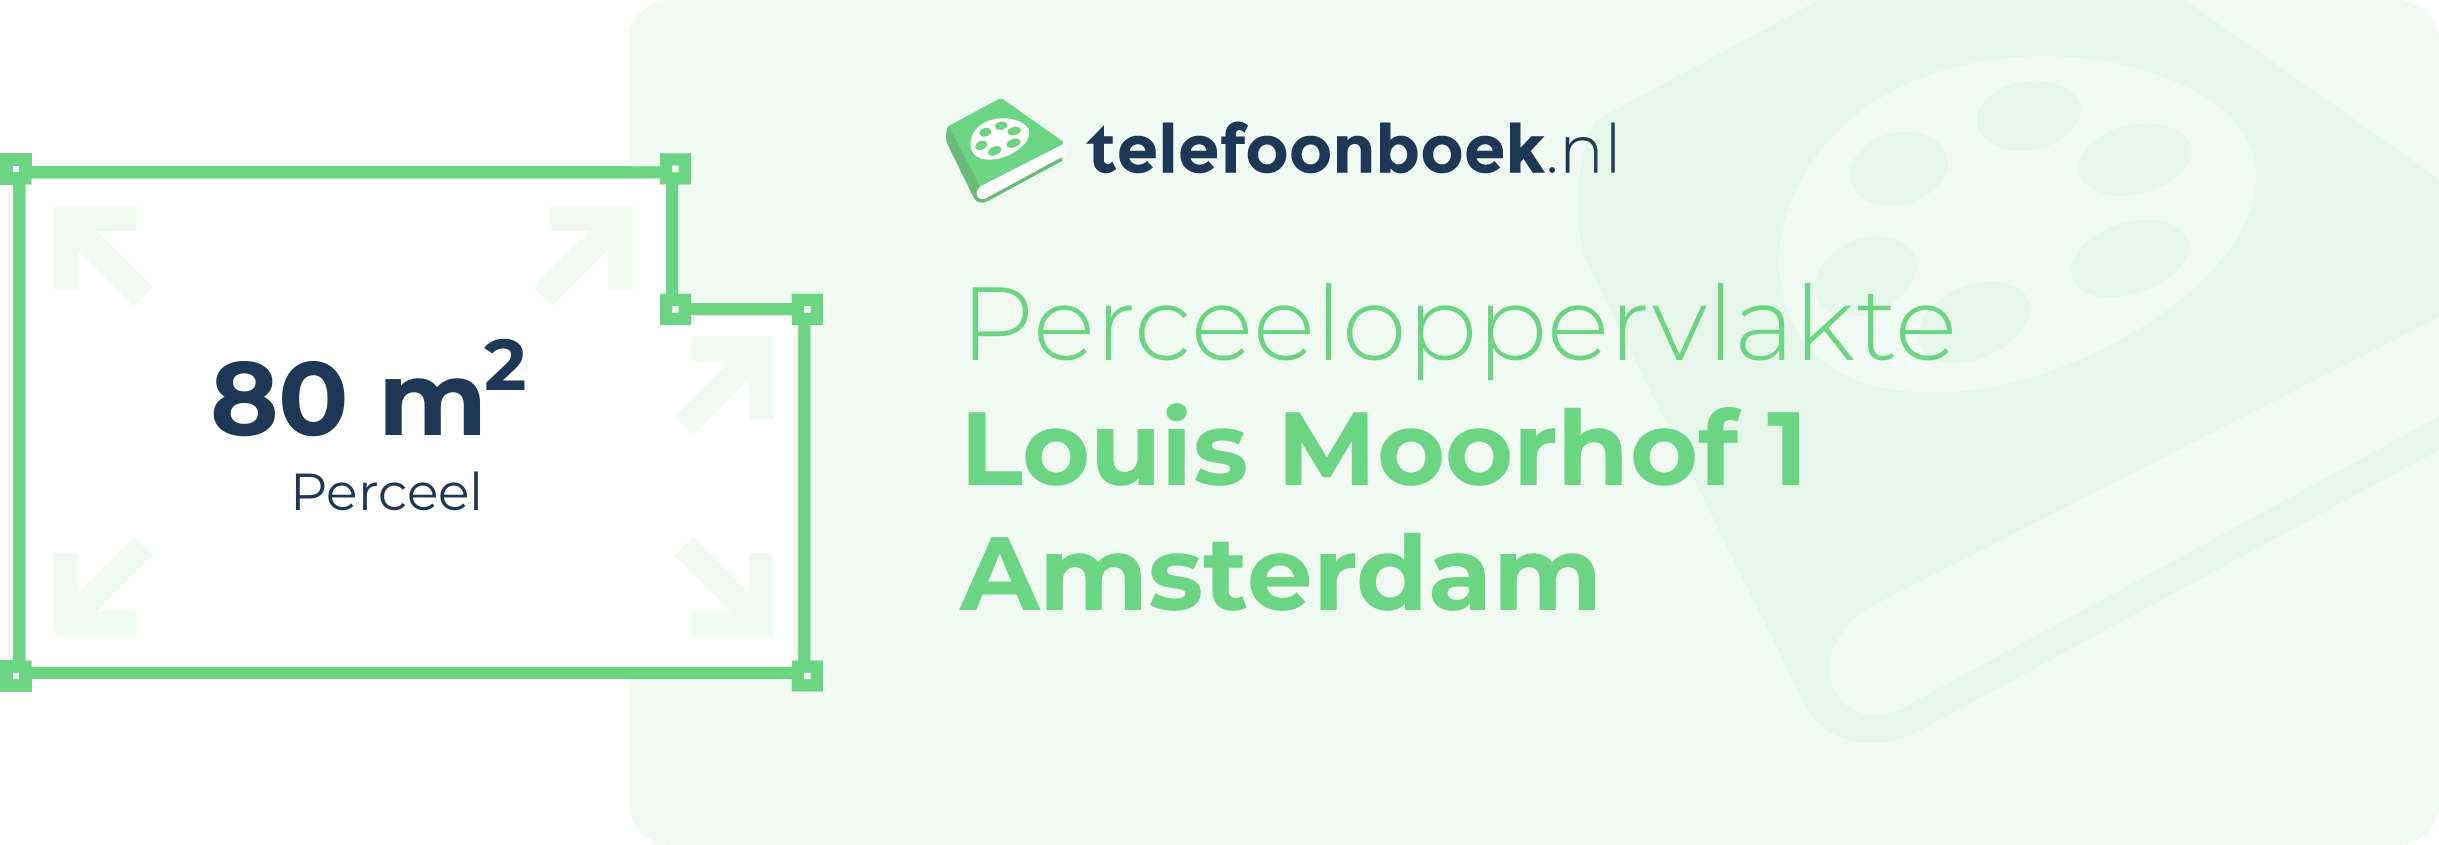 Perceeloppervlakte Louis Moorhof 1 Amsterdam